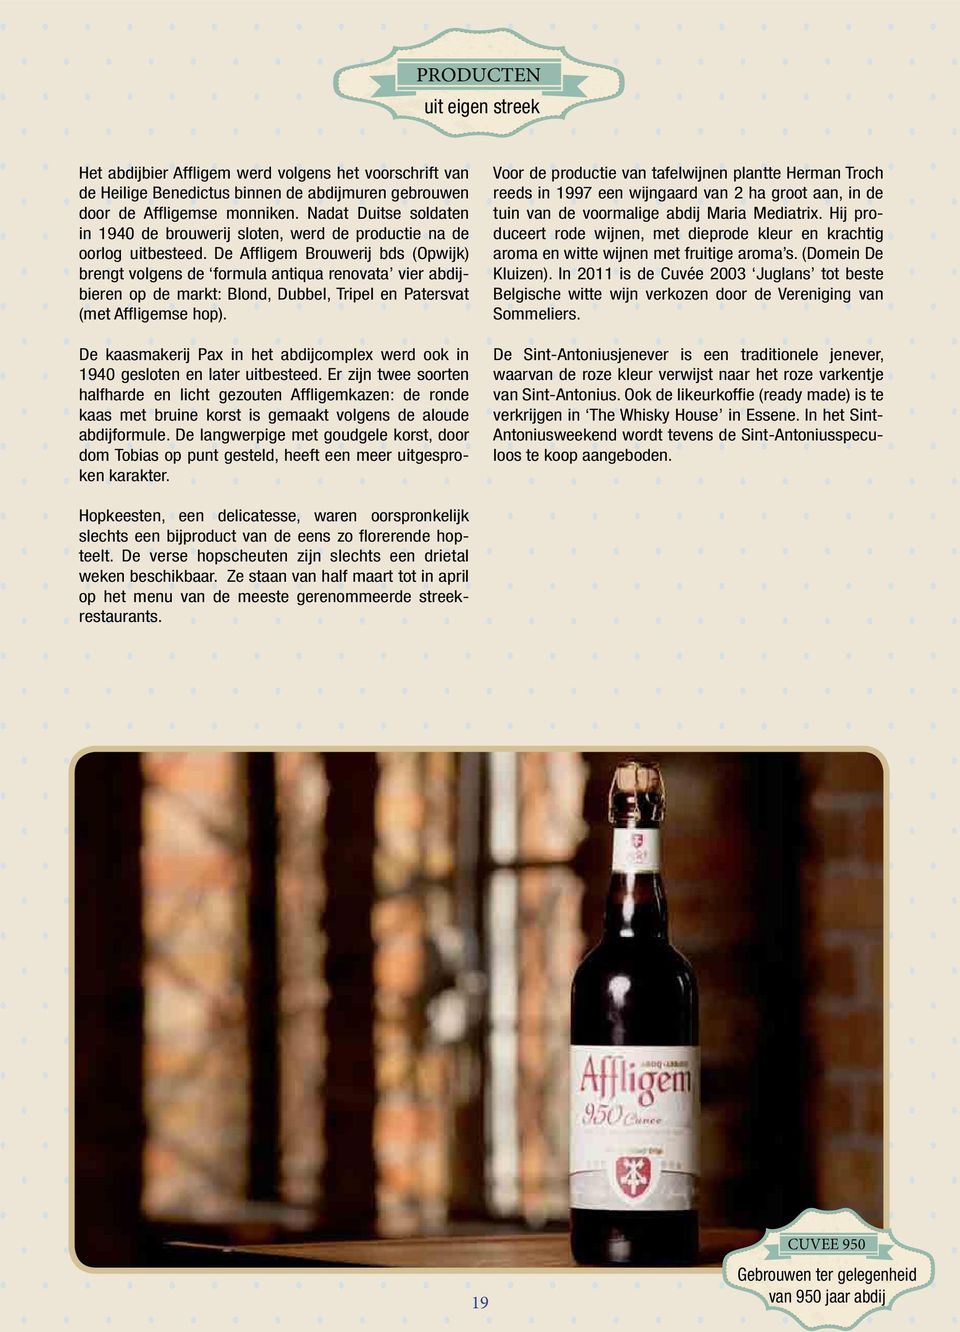 De Affligem Brouwerij bds (Opwijk) brengt volgens de formula antiqua renovata vier abdijbieren op de markt: Blond, Dubbel, Tripel en Patersvat (met Affligemse hop).